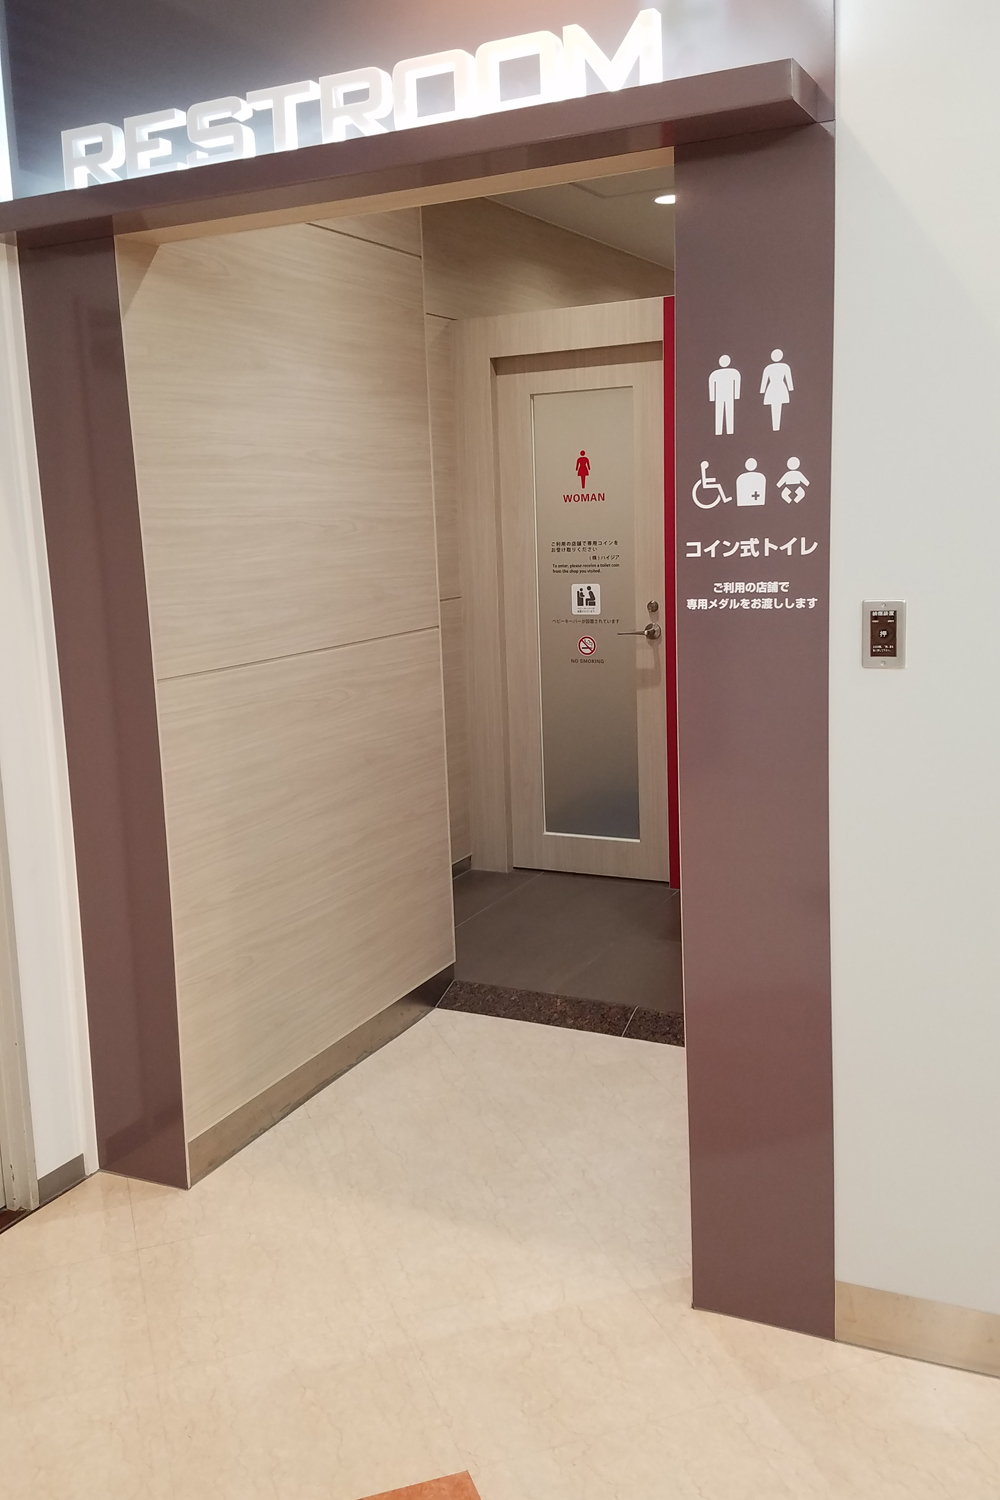 東京都某所　複合施設コイン式トイレ導入工事